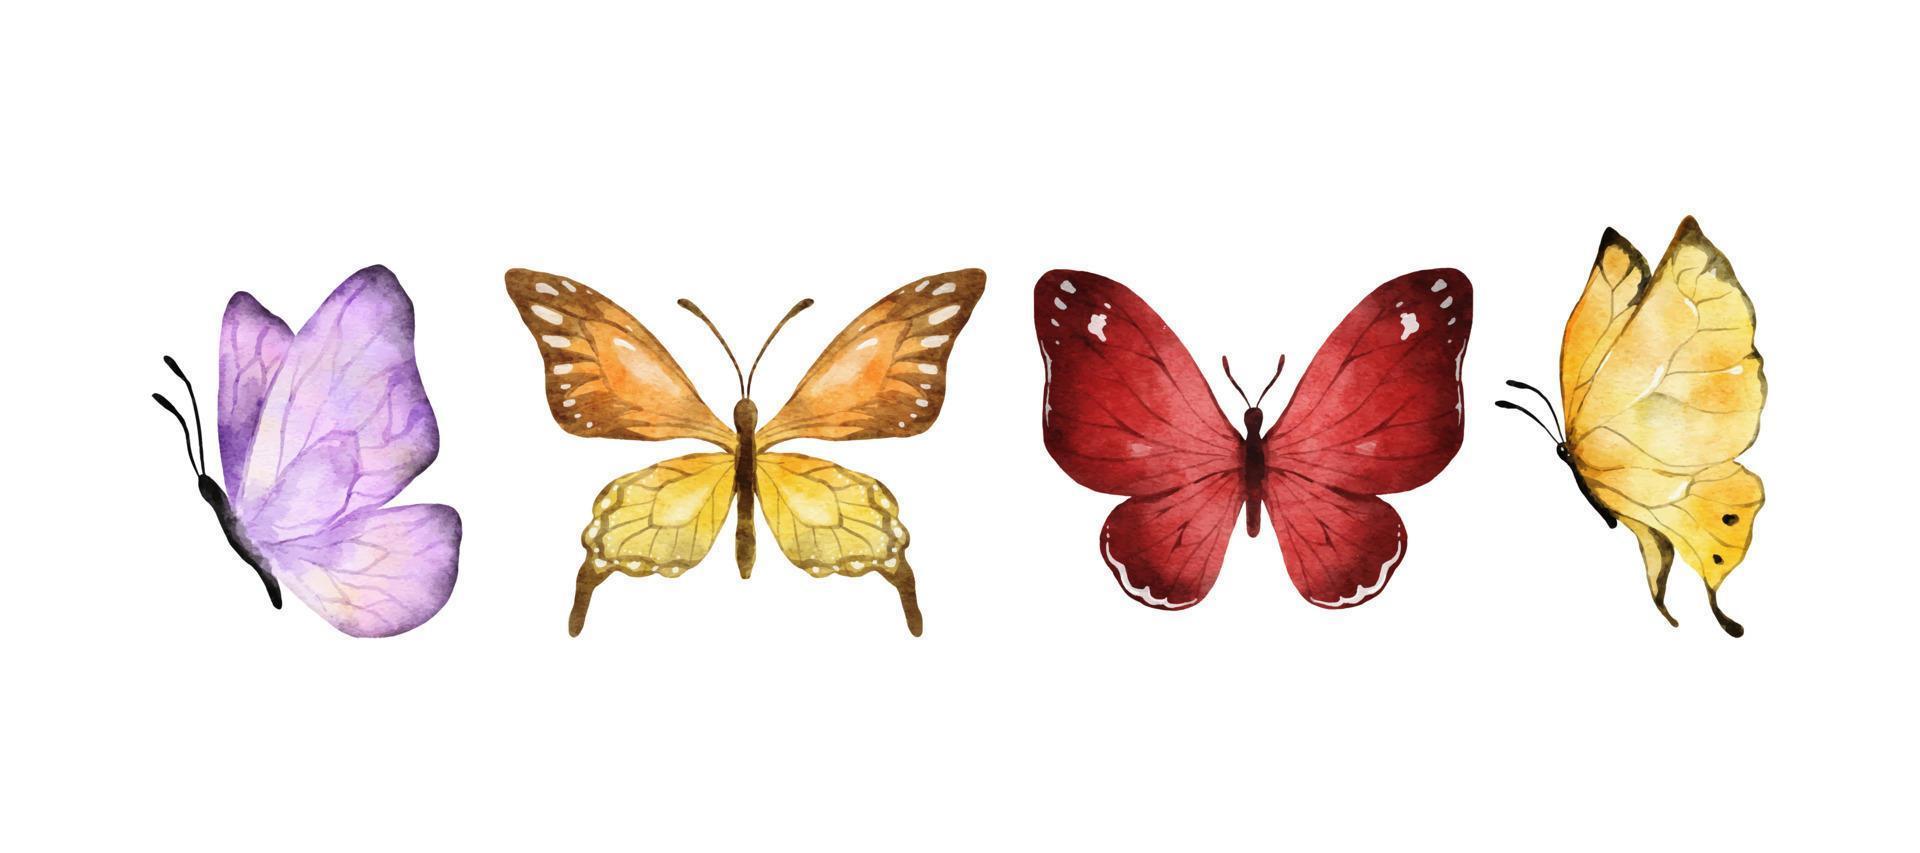 acquerello di farfalle colorate isolato su sfondo bianco. farfalla viola, arancione, gialla e rossa. illustrazione vettoriale animale primaverile